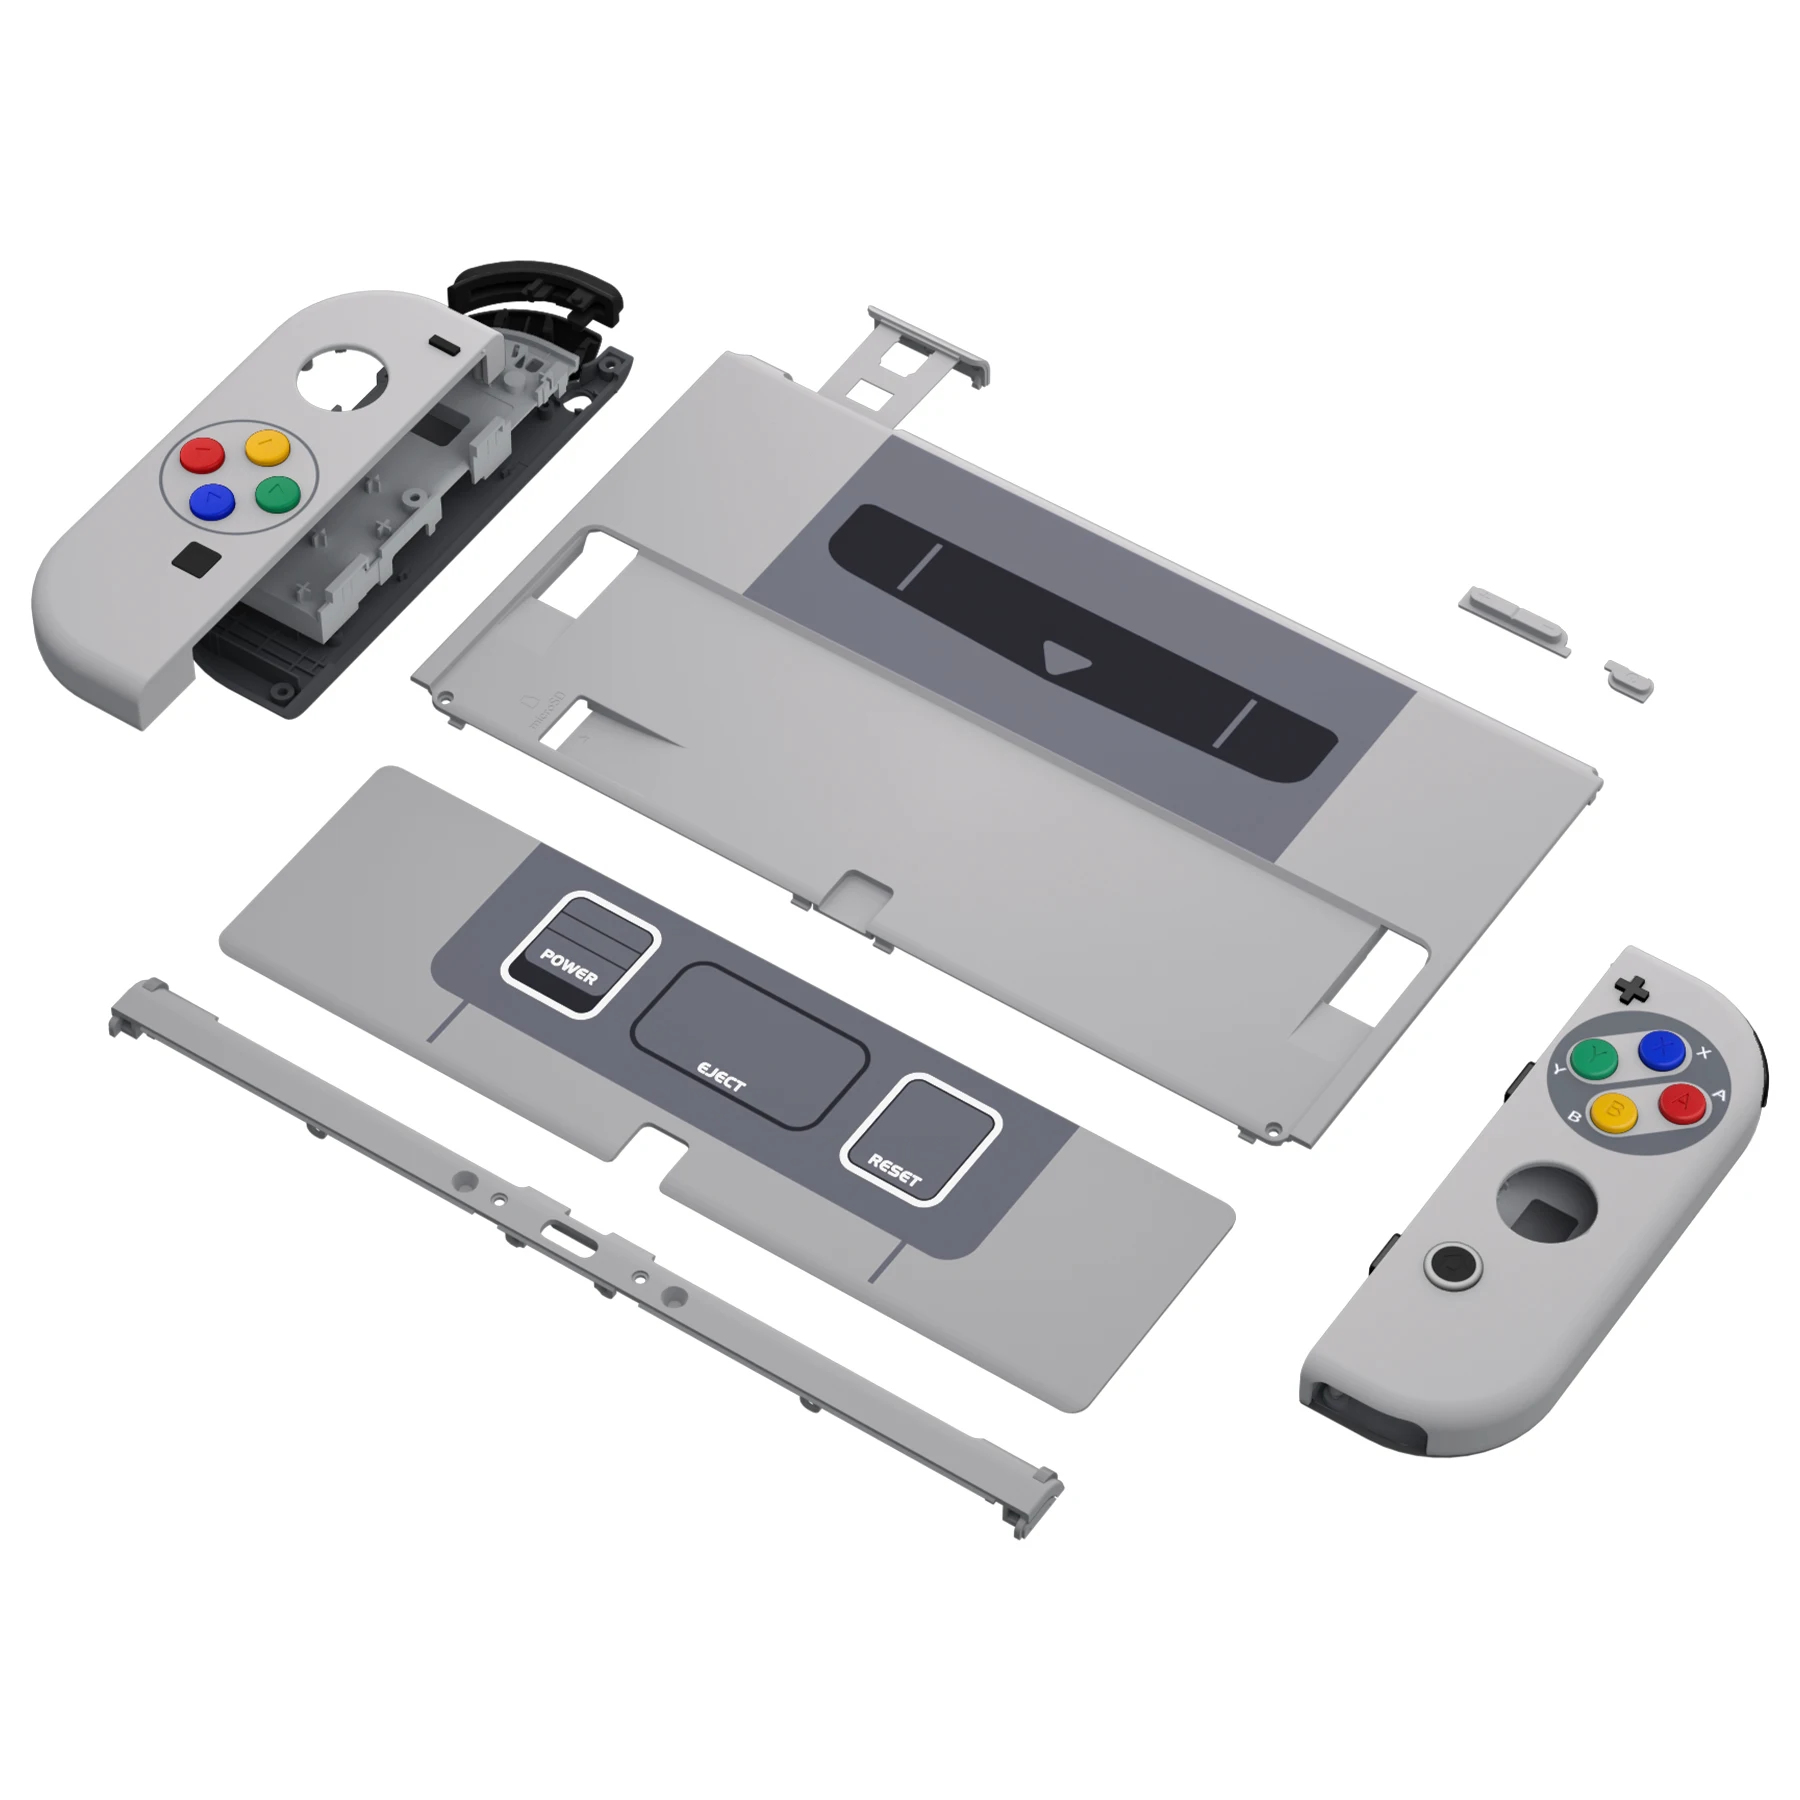 Extrem benutzer definierte Full-Set-Shell, Ersatz-Back-Plate-Metall-Kicks tand, Joycon-Gehäuse knöpfe für Nintendo Switch oled